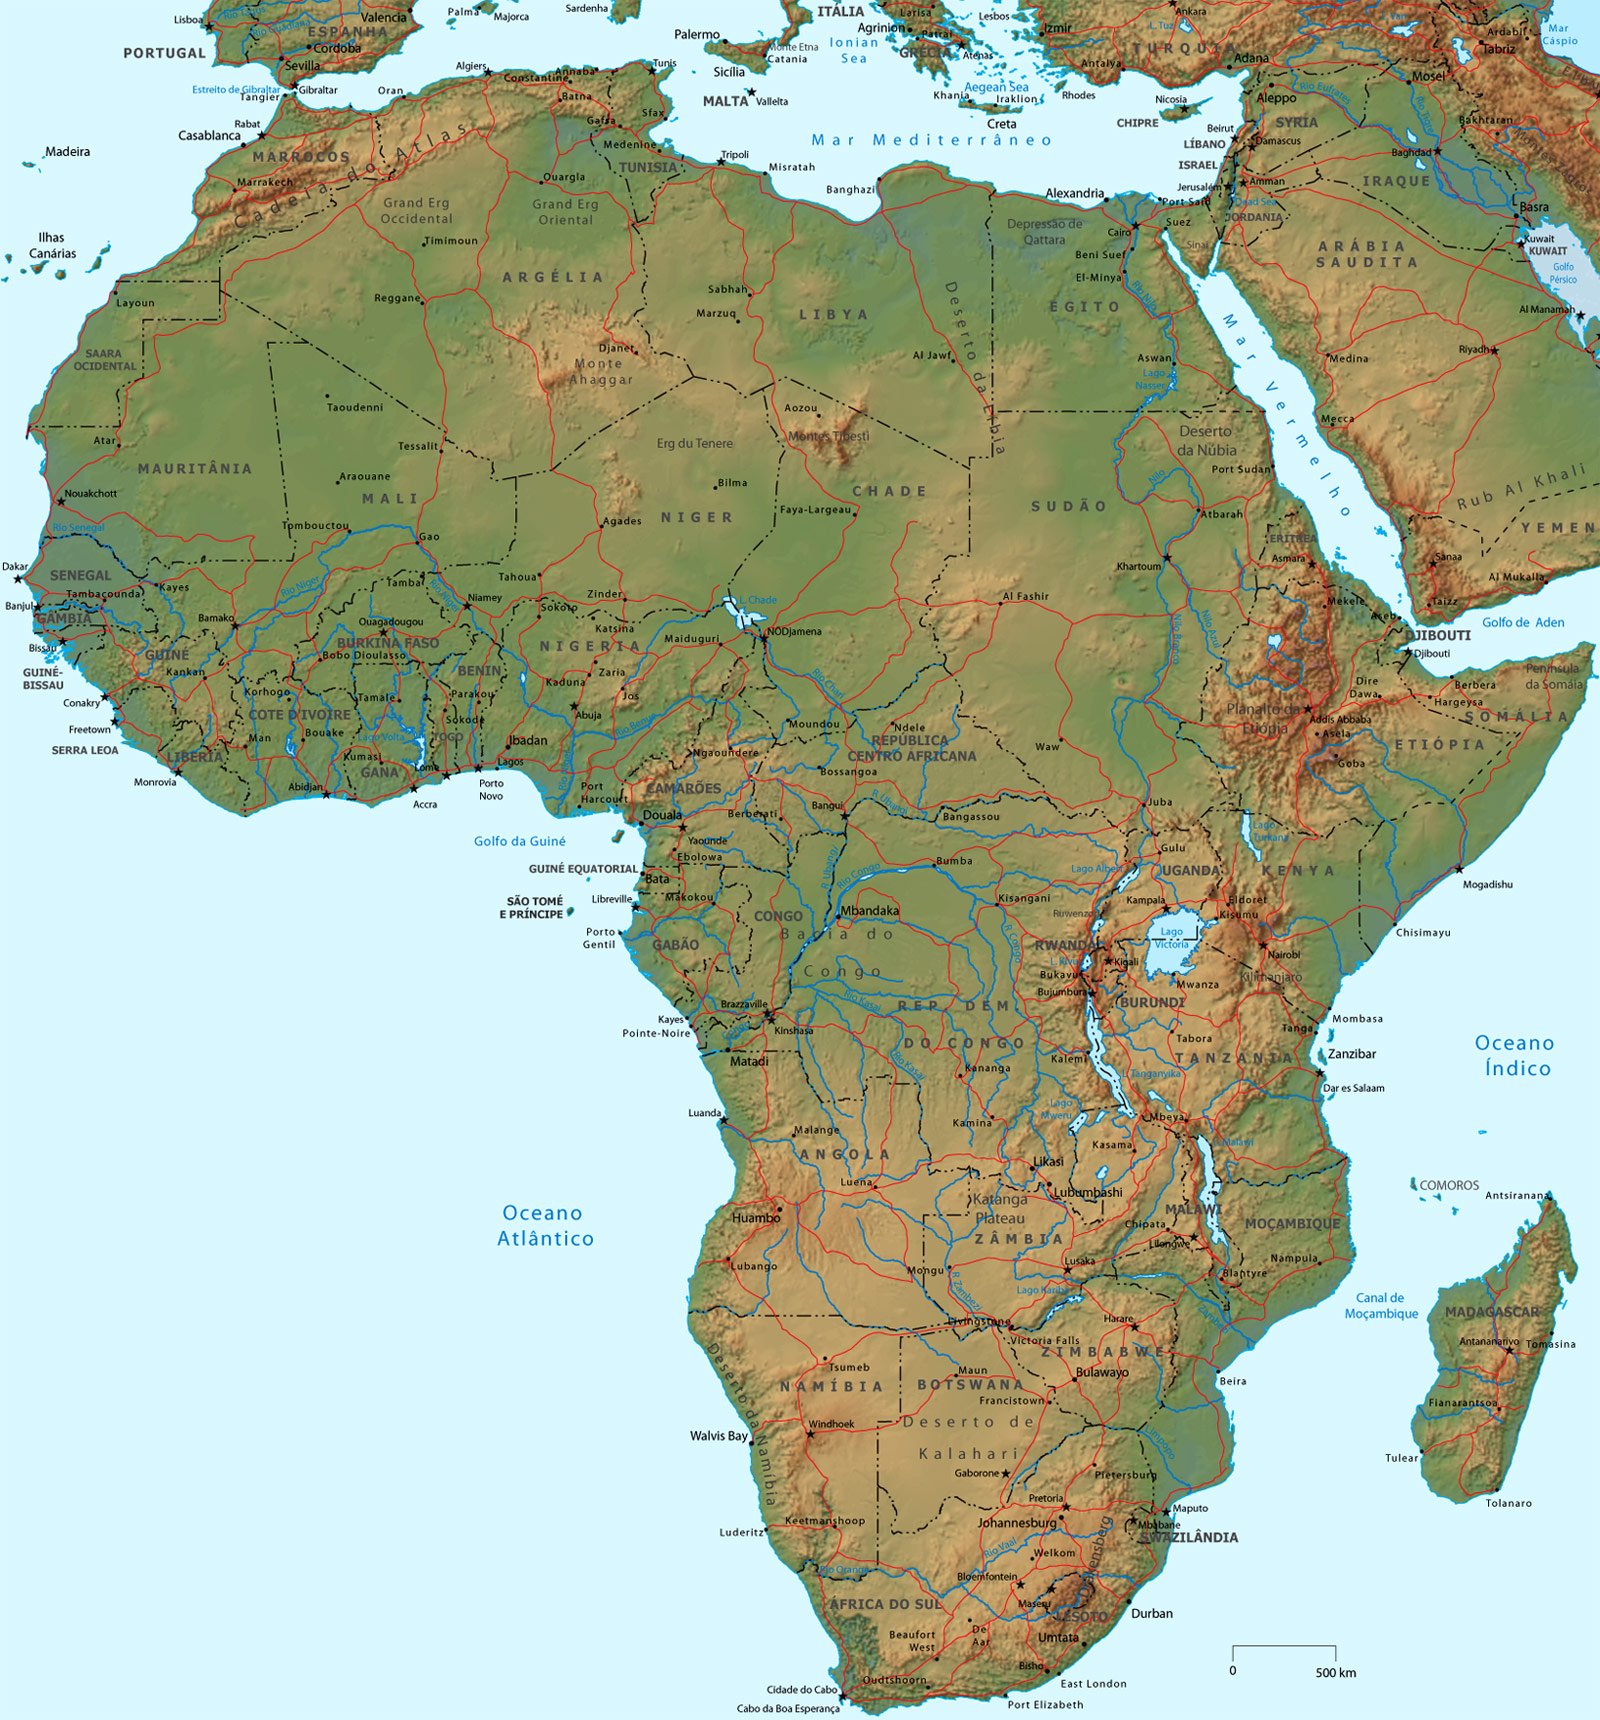 Mapa Físico da Africa